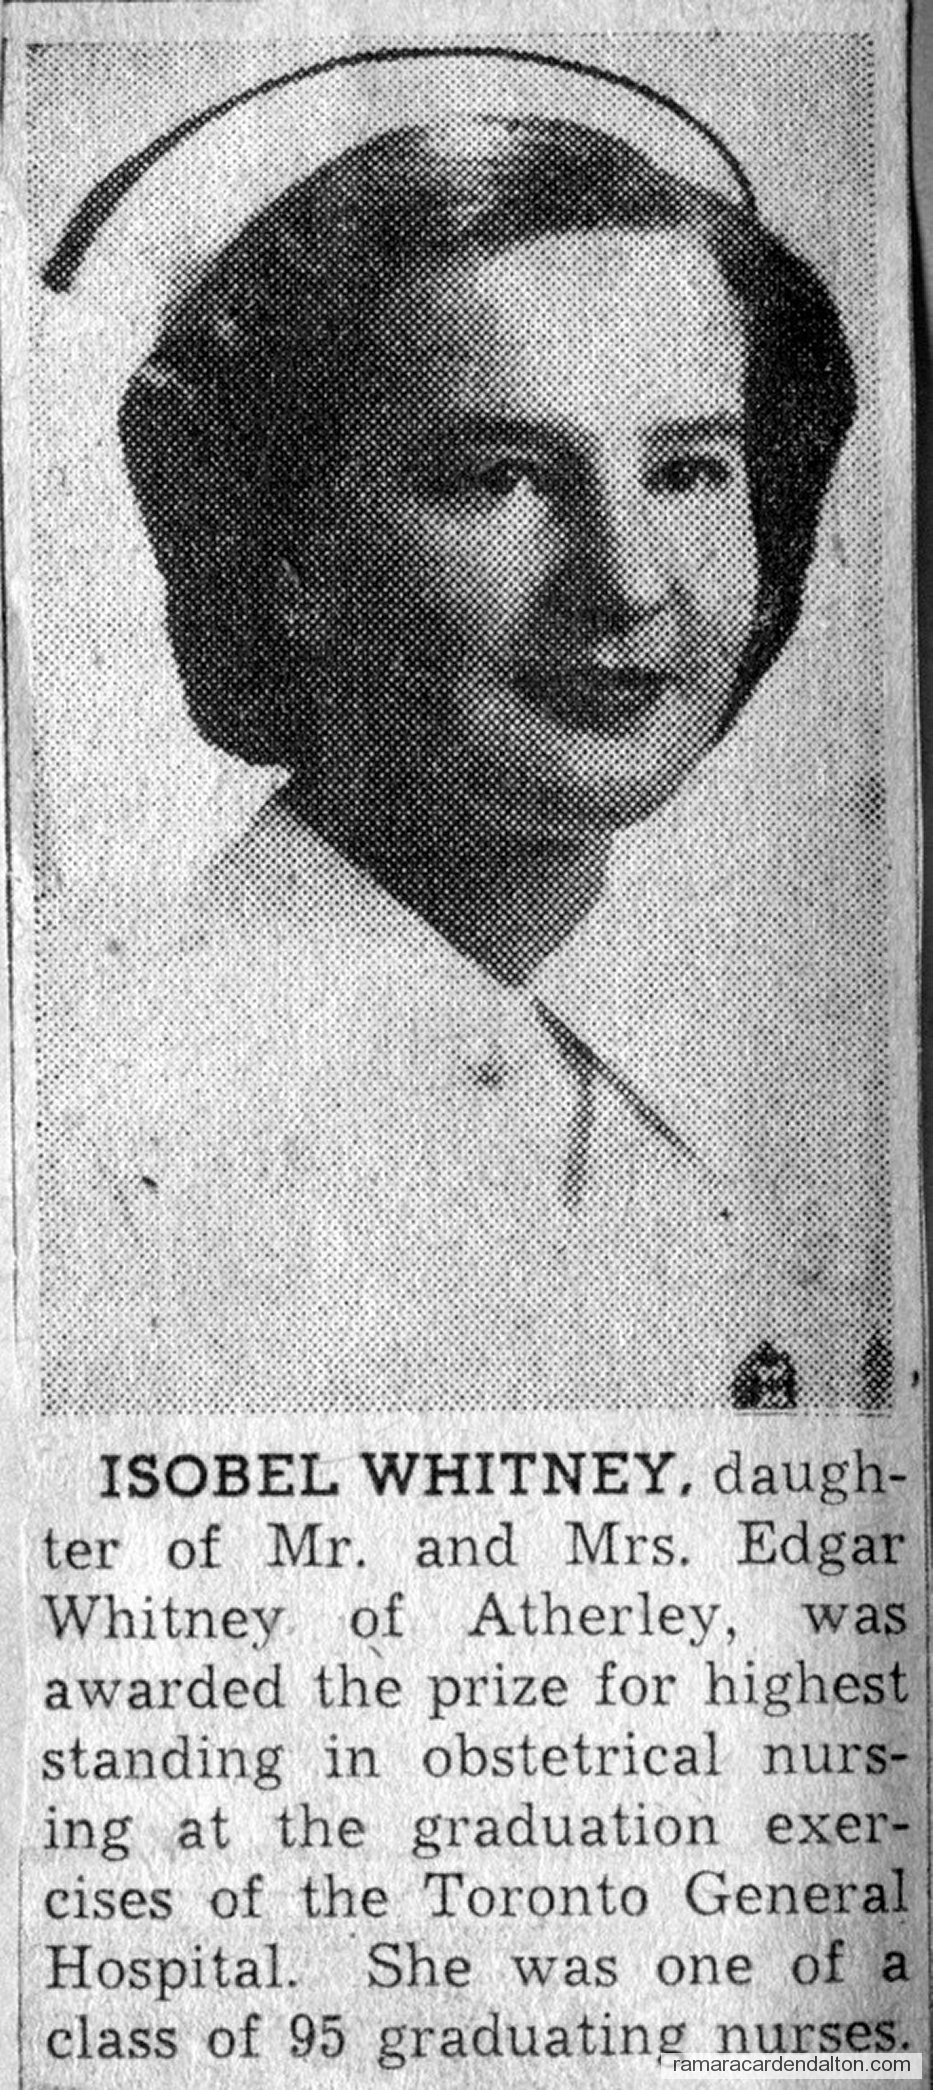 Isobel Whitney